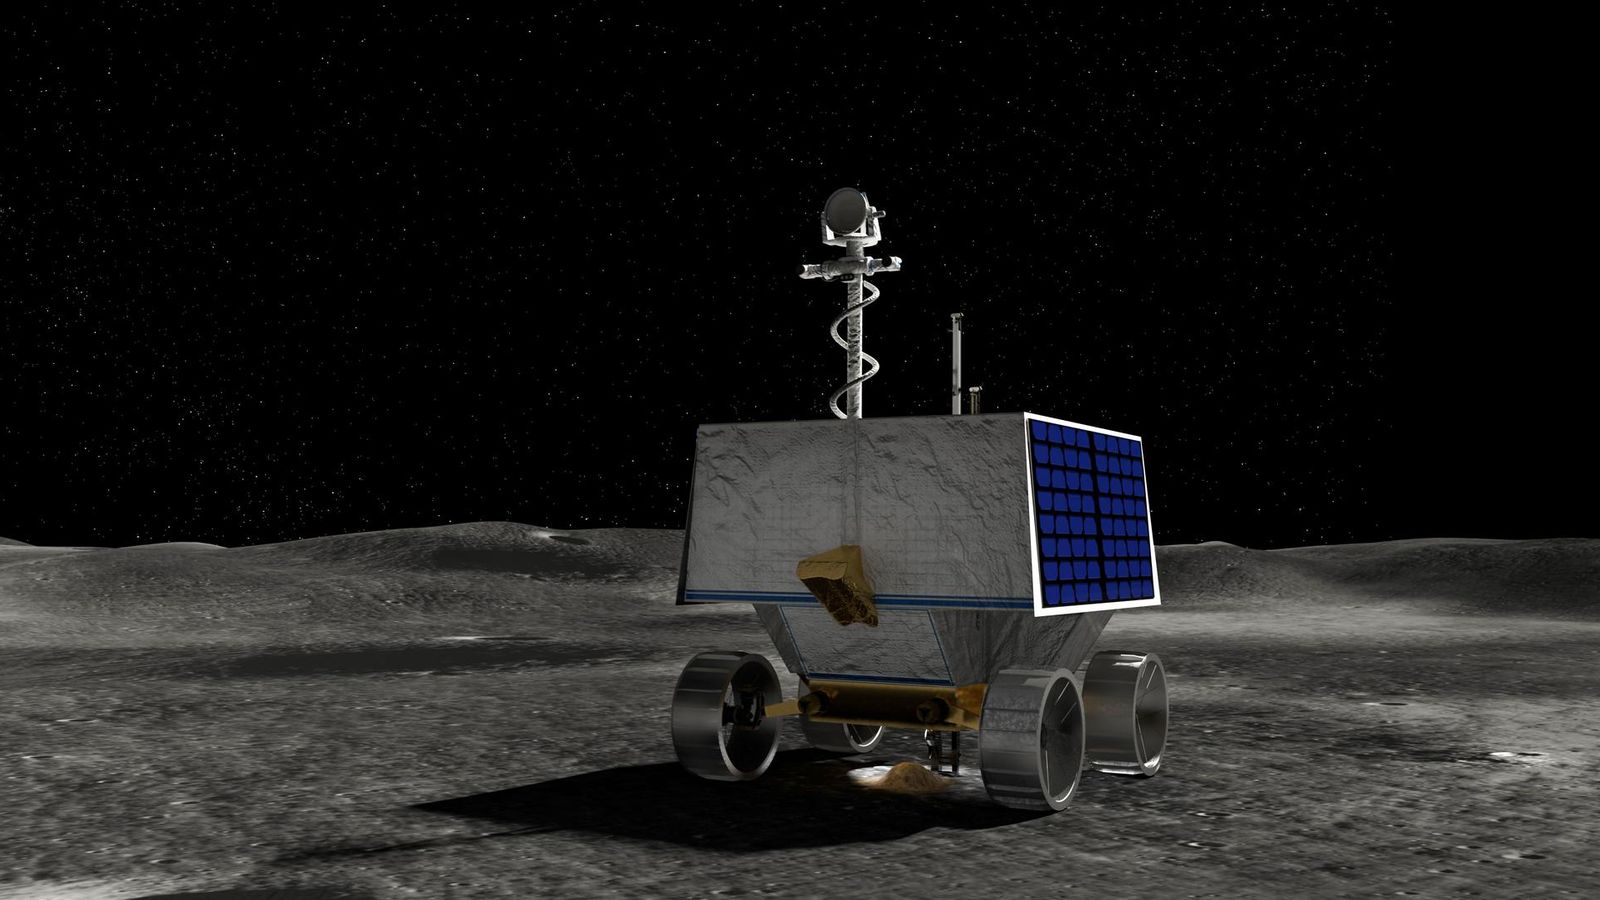 ناسا تعرض عليك فرصة إرسال اسمك إلى القمر في مهمة روفر روبوتية إلى القطب الجنوبي |  أخبار العلوم والتكنولوجيا